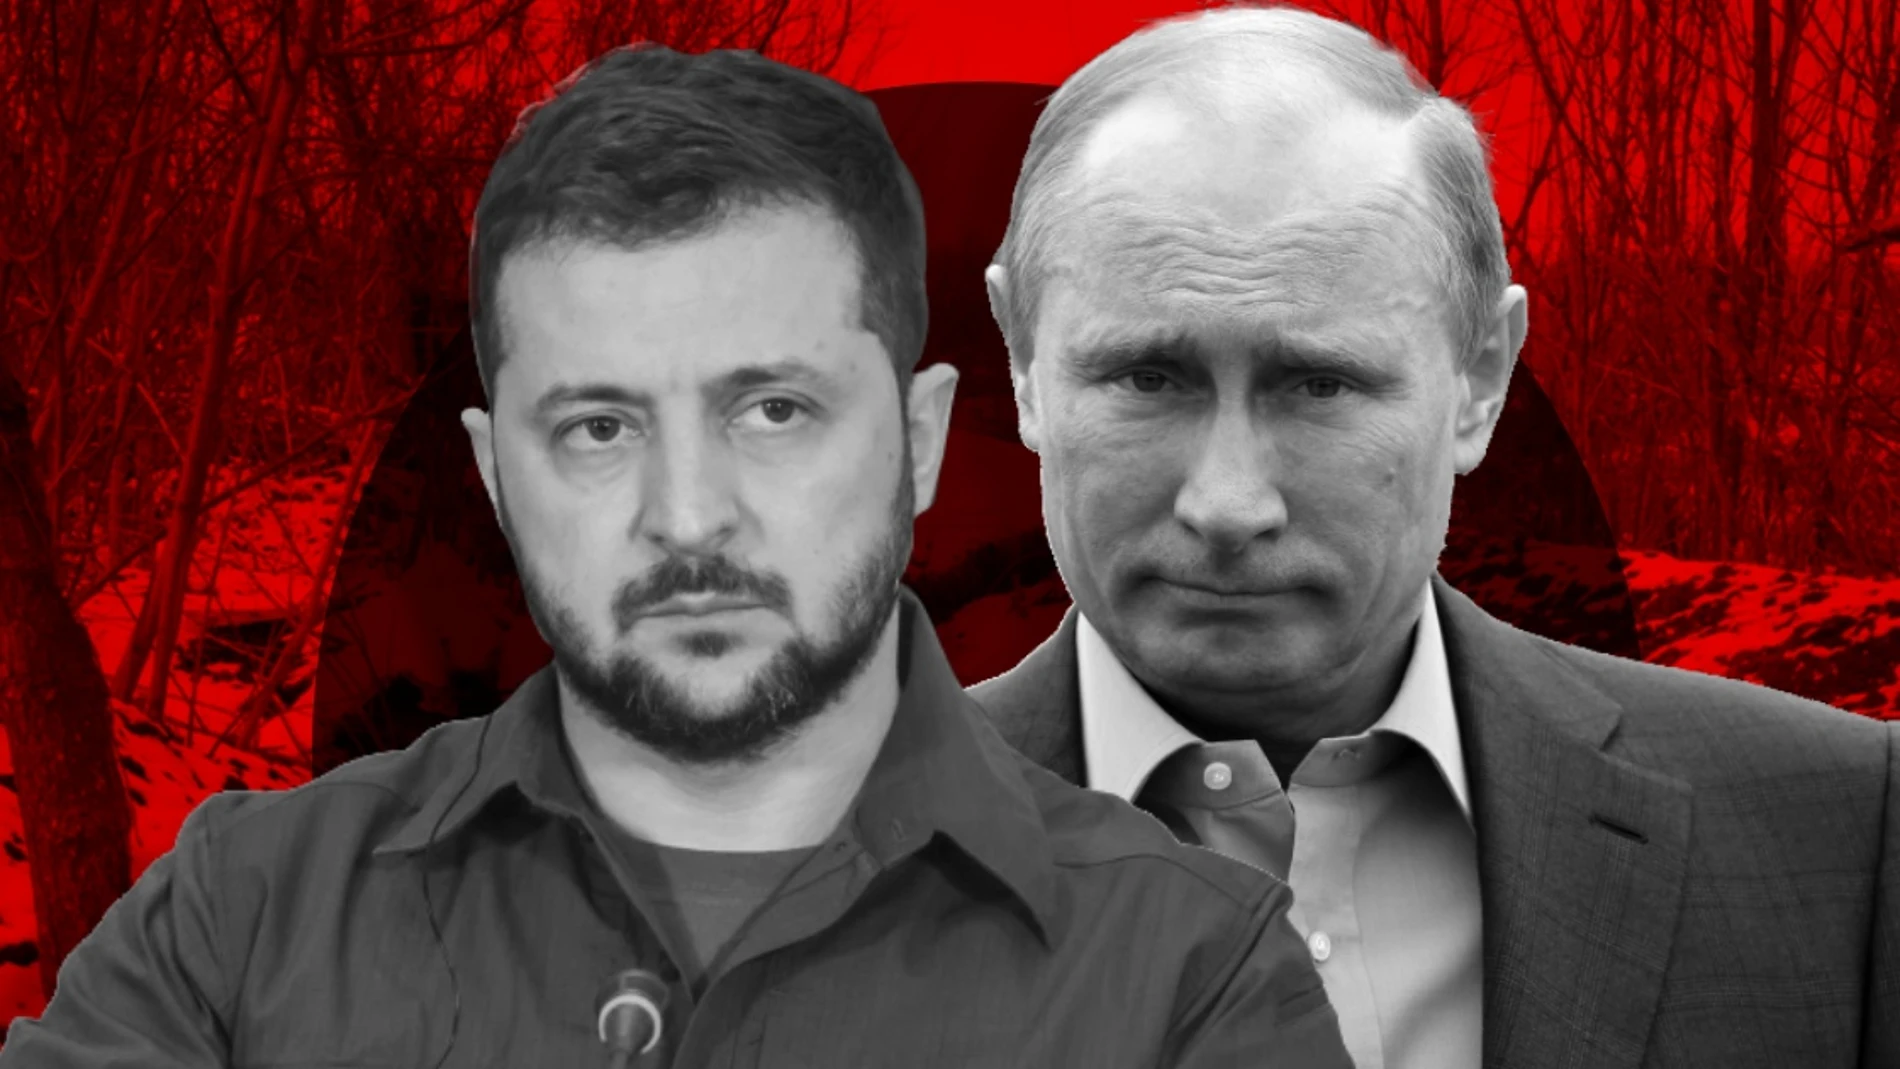 Imagen de Vladimir Putin y Volodomir Zelenski, protagonistas del conflicto bélico